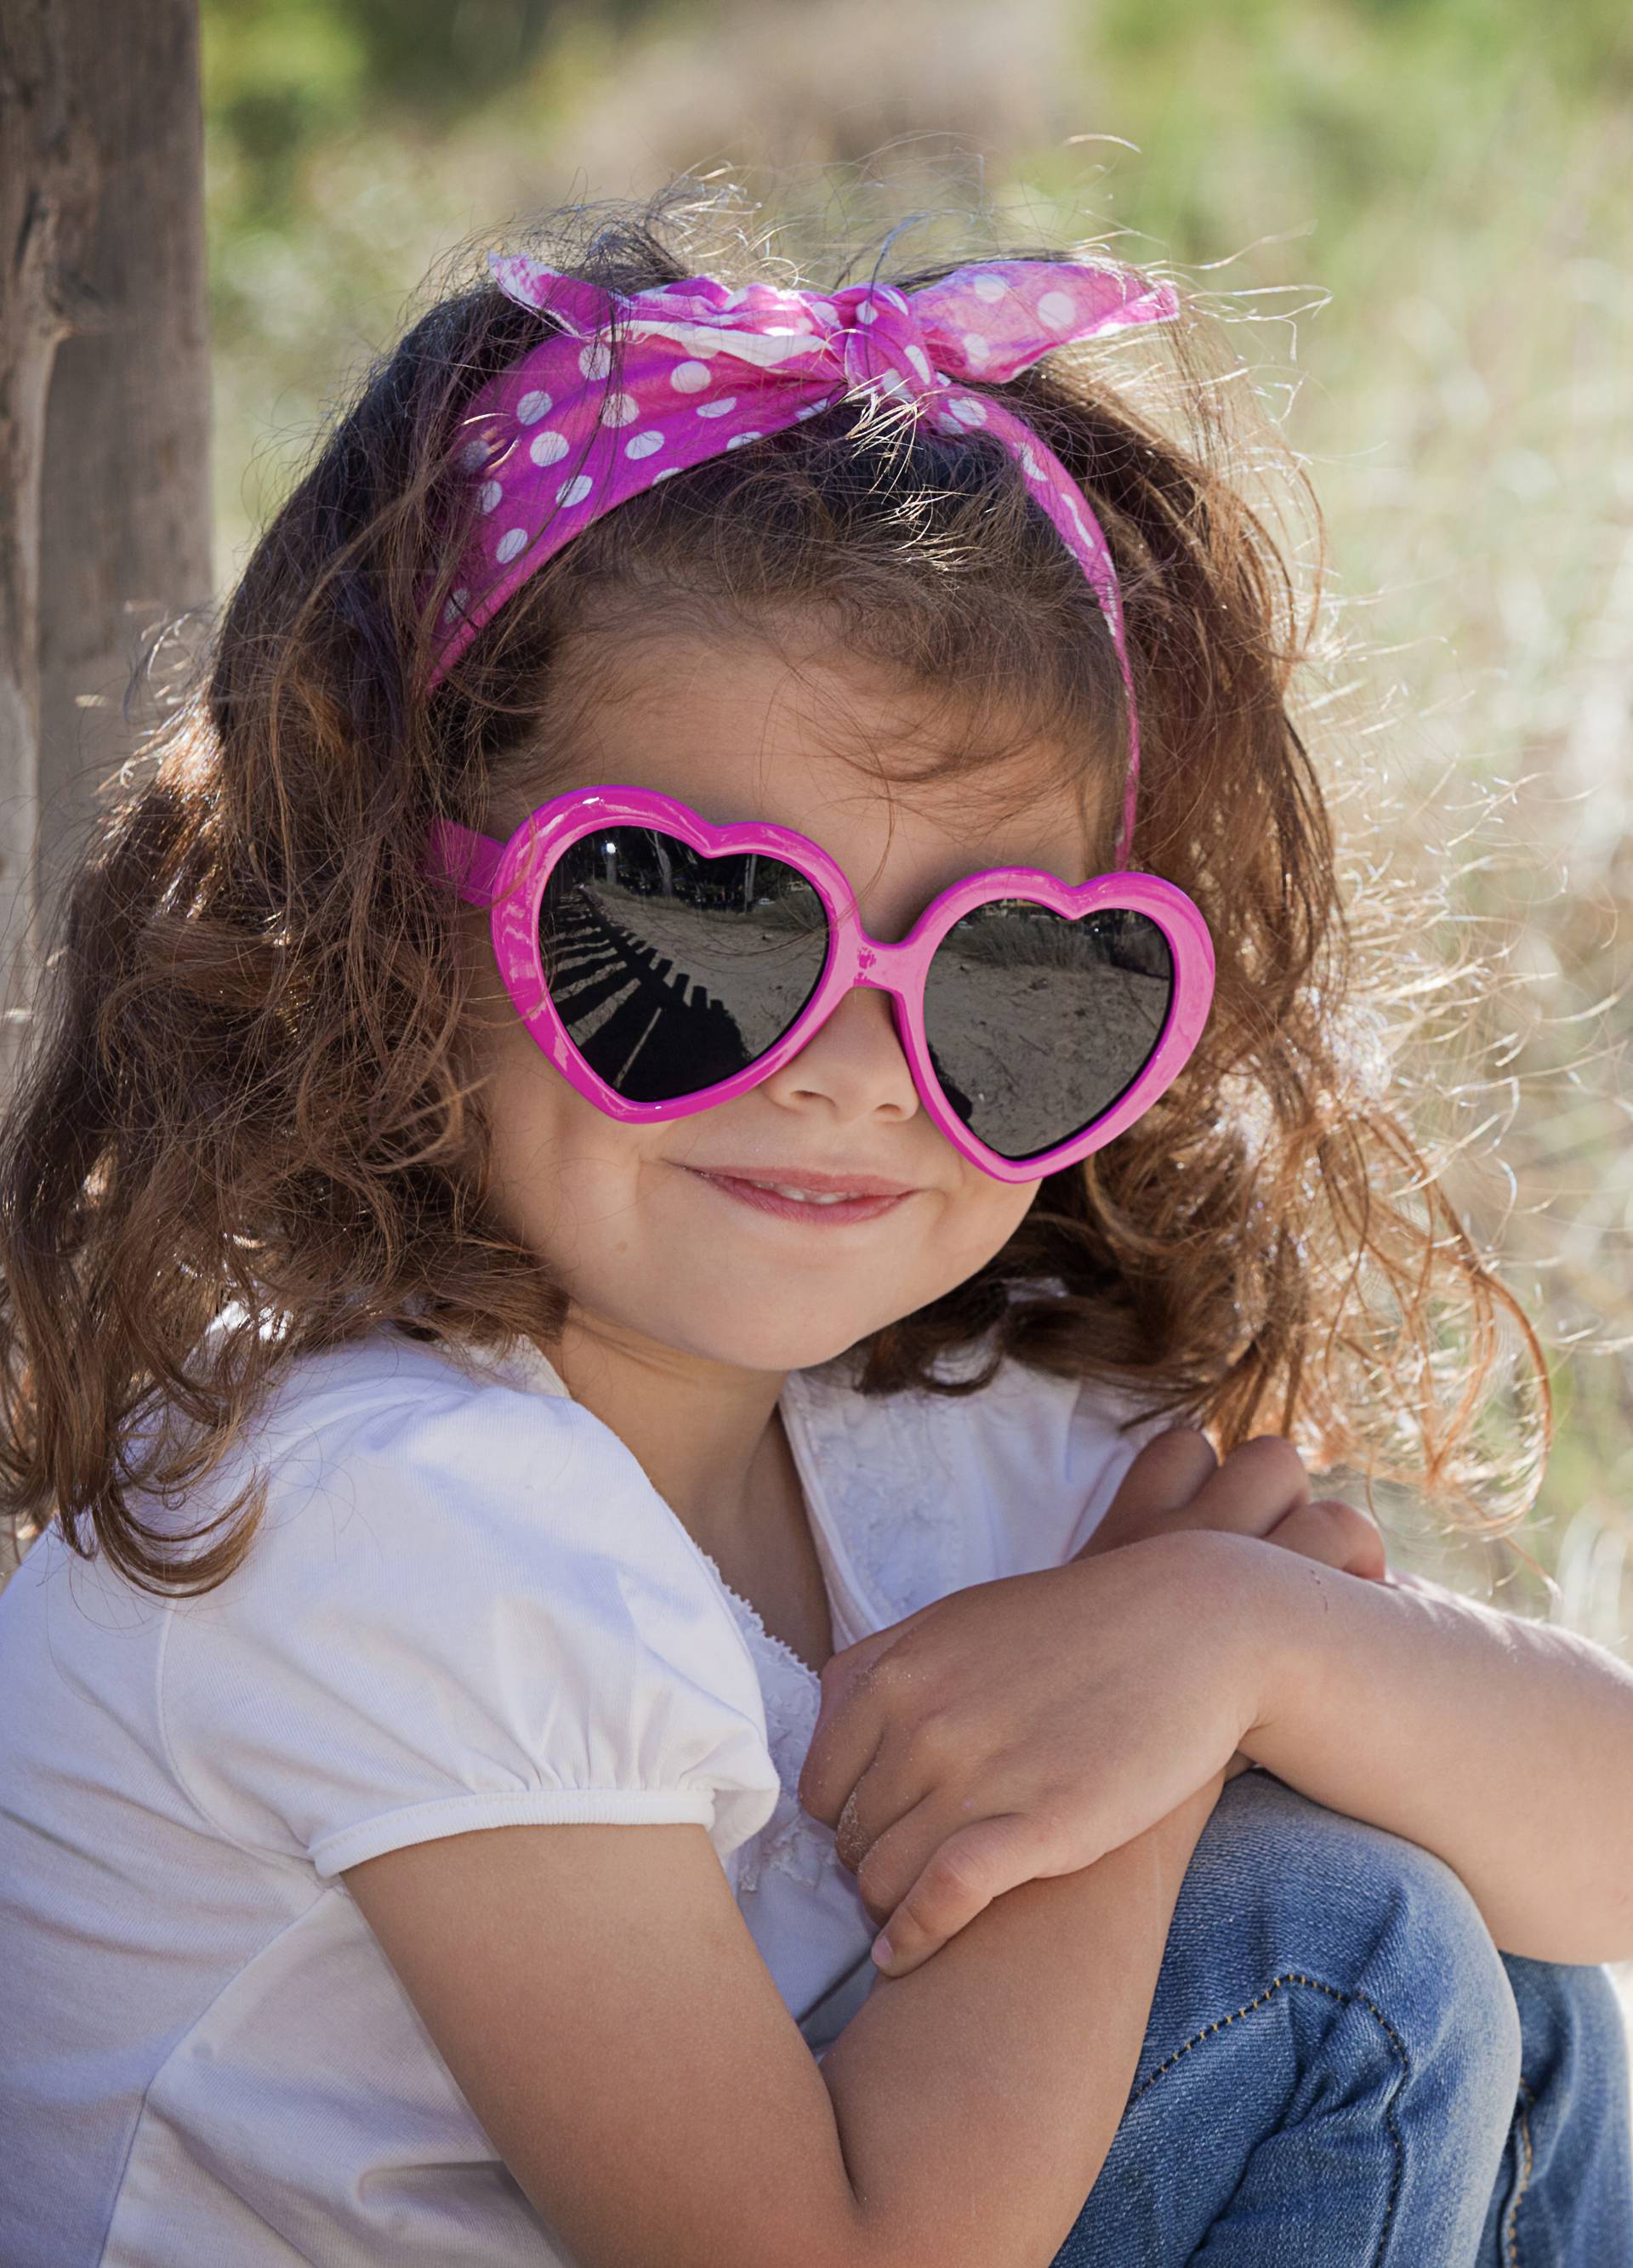 Sunčane naočale za djecu trebaju imati certifikat i filtar